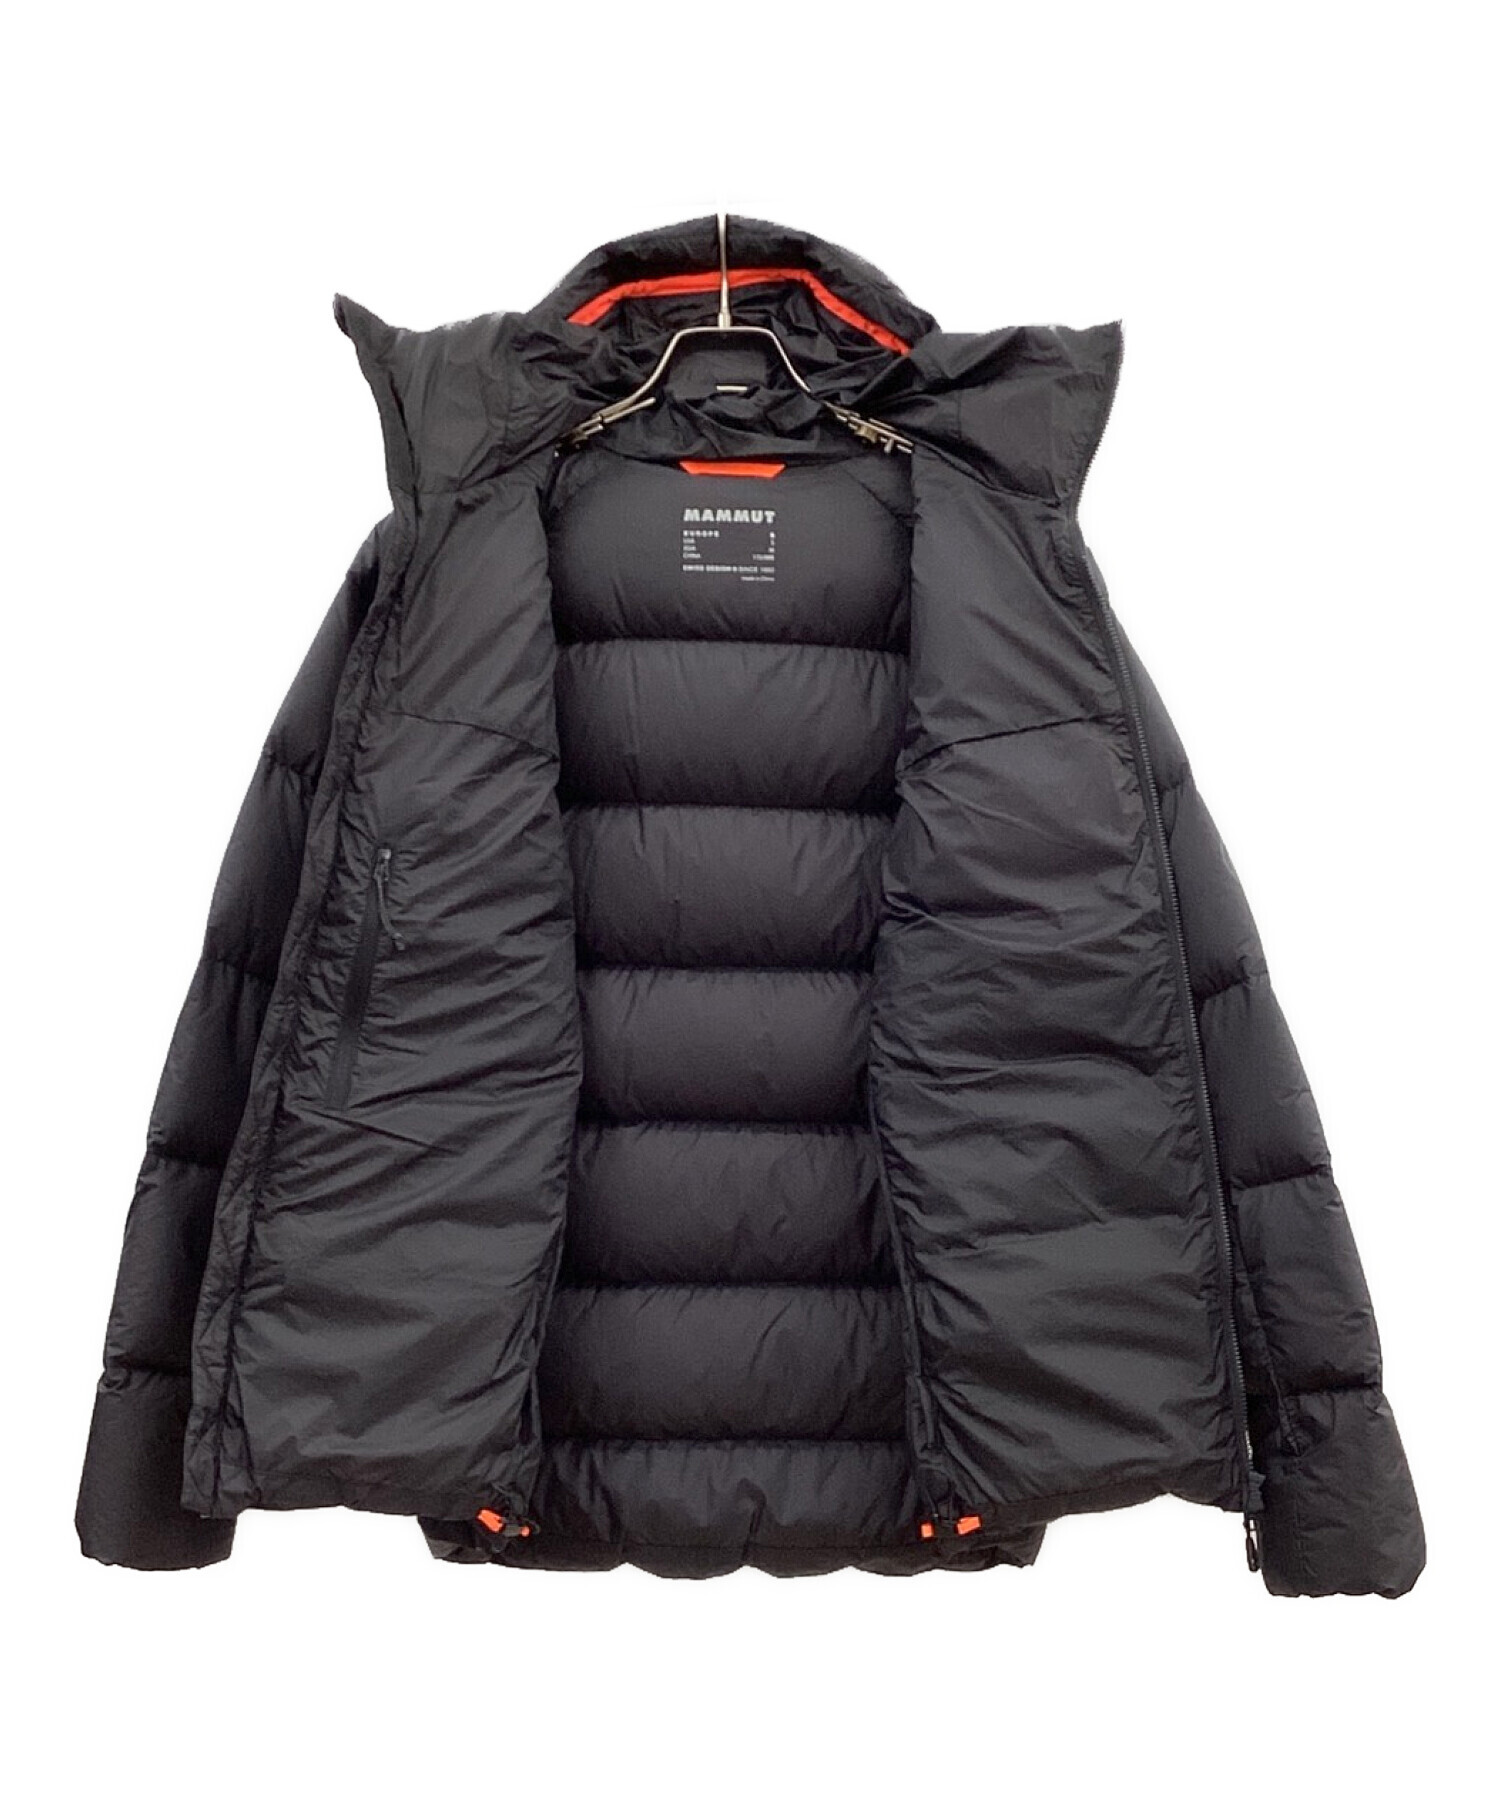 MAMMUT (マムート) メロンインフーデッドジャケット ブラック サイズ:M